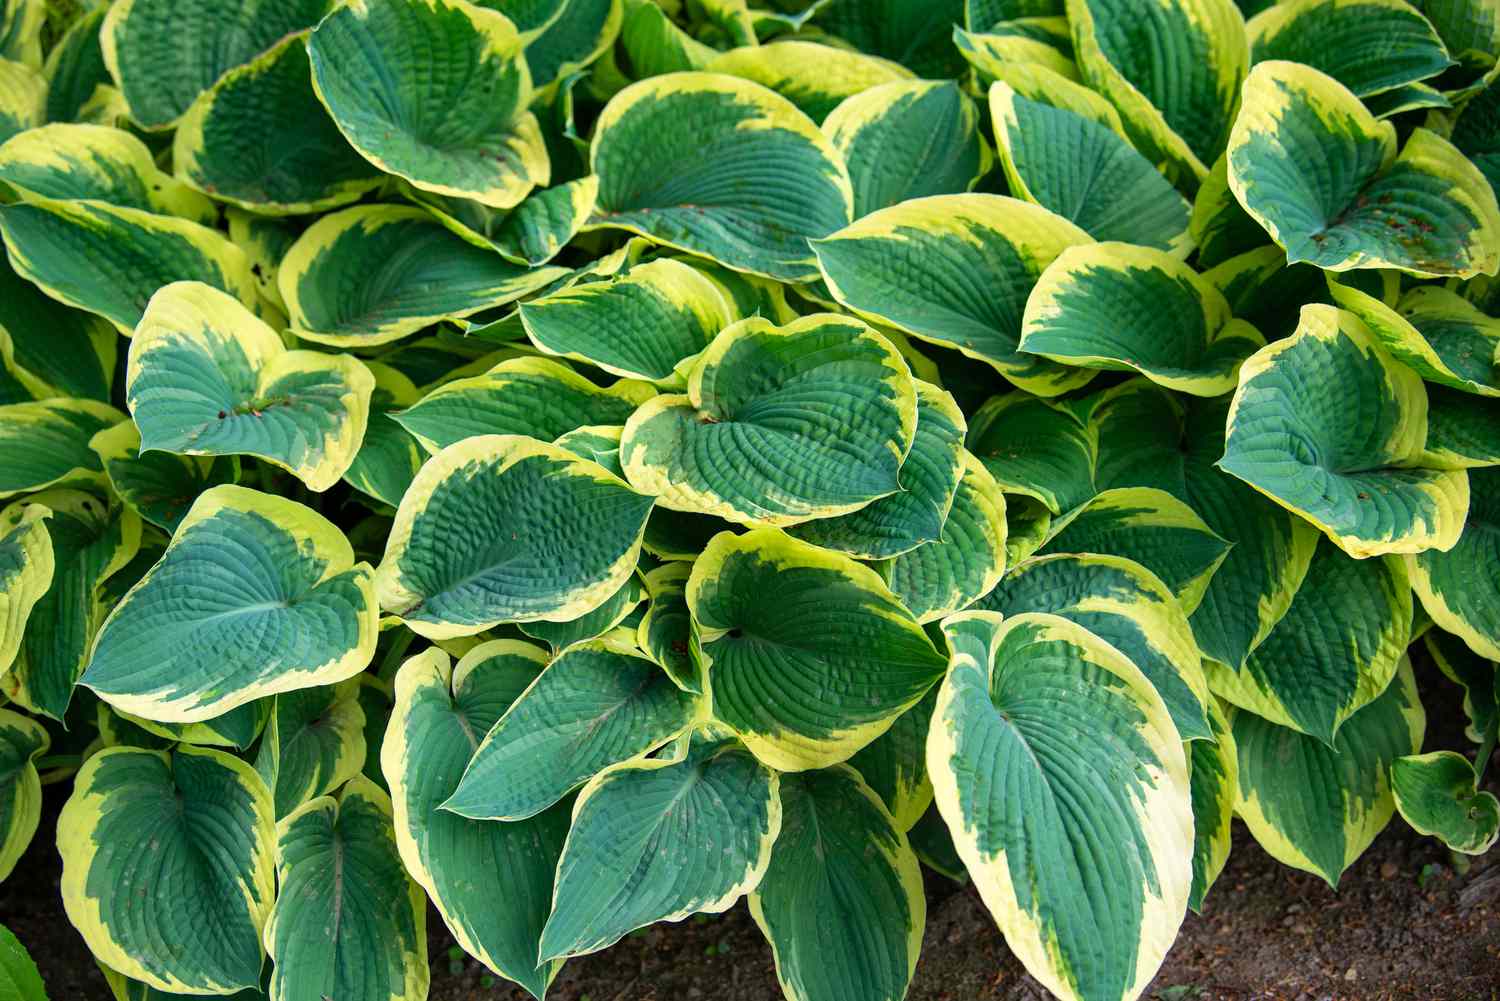 Hosta-Pflanze mit bunten gelben und grünen Blättern in Gruppen